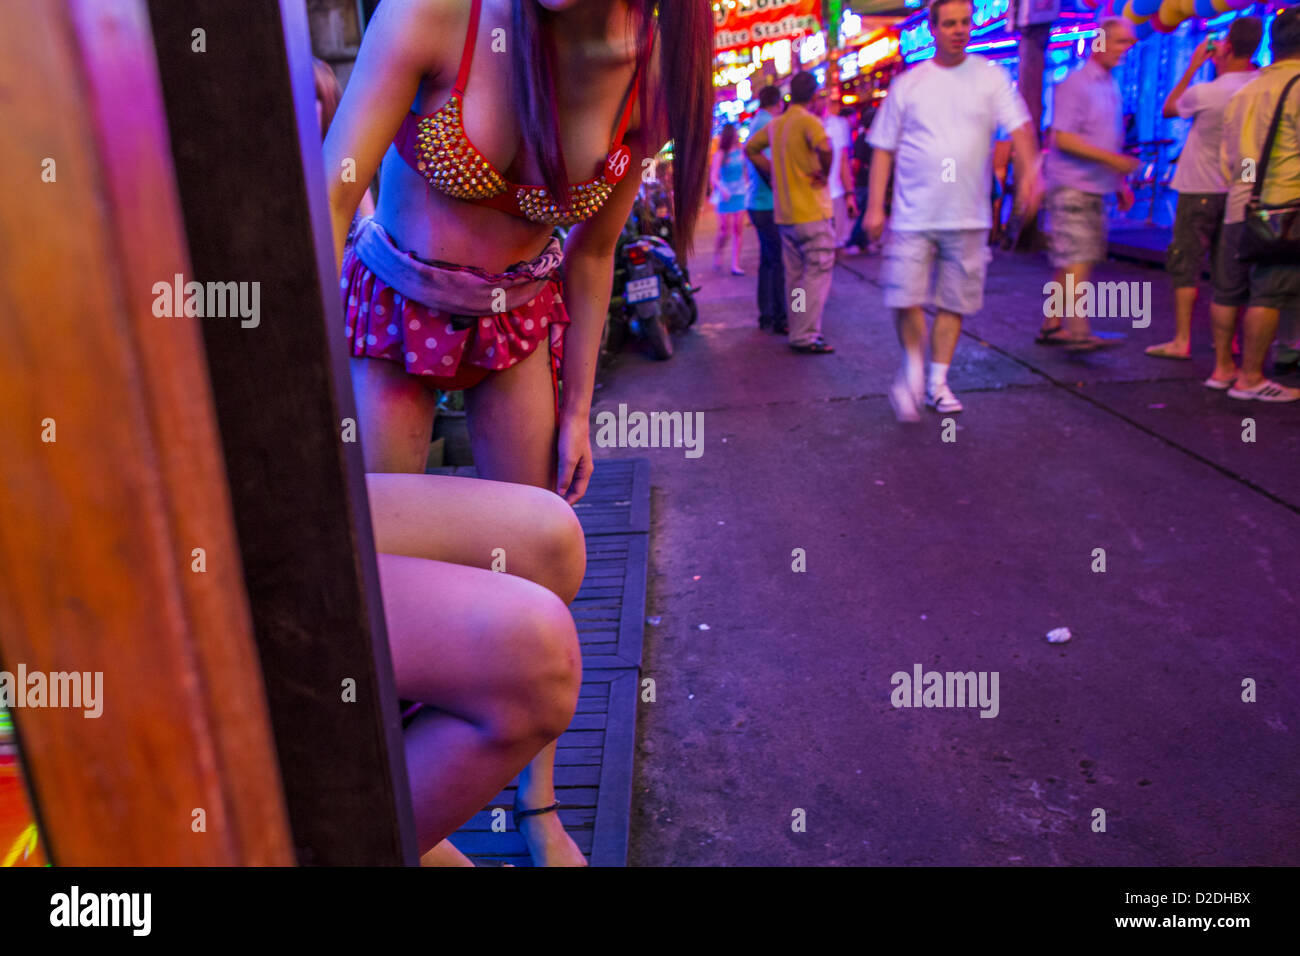 Gen 12, 2013 - Bangkok, Thailandia - Ladyboy (transgendered) animatori cercano di attirare i clienti nel Cacatua bar in Soi Cowboy quartiere a luci rosse di Bangkok. In Thai, la ladyboys sono chiamati kathoey. Molti lavorano in divertimento e vita notturna e settori dell'economia thailandese. La prostituzione in Thailandia è illegale, anche se in pratica è tollerata e in parte disciplinati. La prostituzione è attuata apertamente in tutto il paese. Il numero di prostitute è difficile da determinare, le stime variano ampiamente. Poiché la guerra del Vietnam, Thailandia ha acquisito una notorietà internazionale tra i viaggiatori da Foto Stock